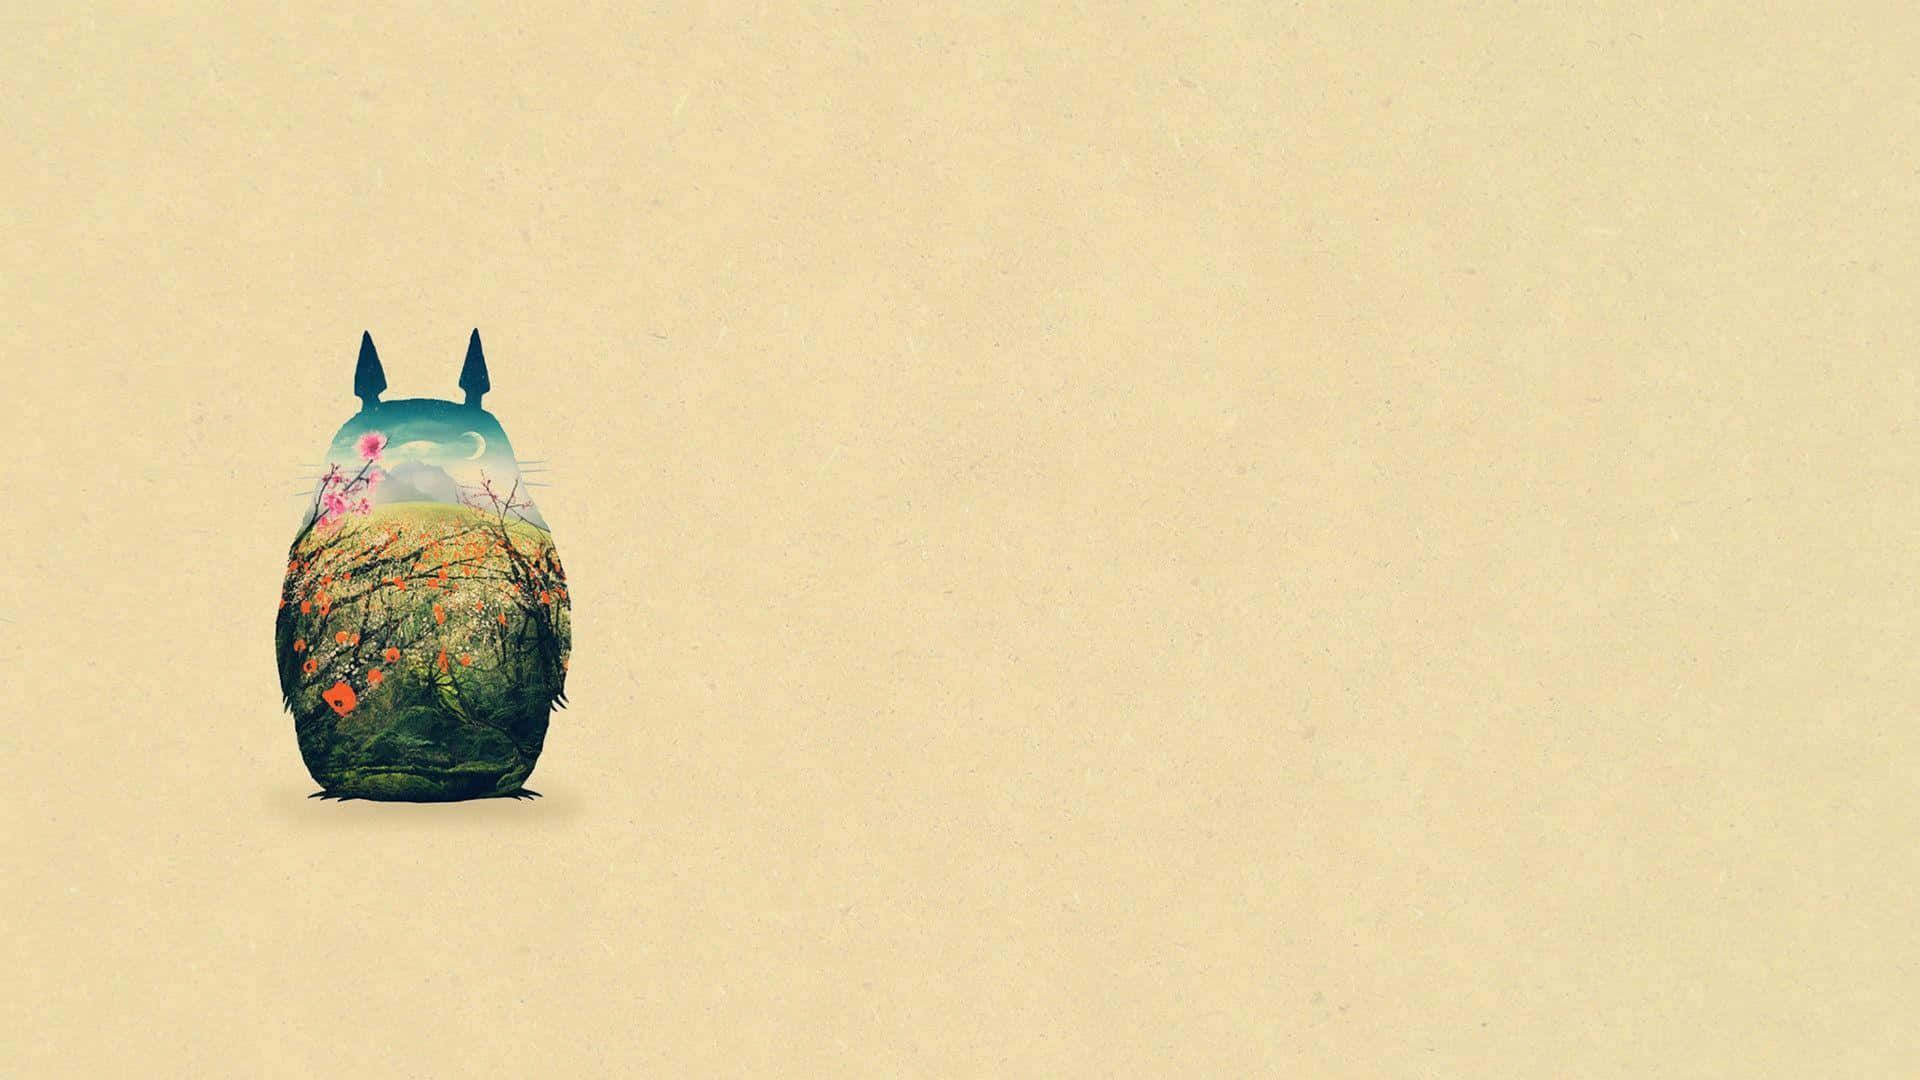 Einmagischer Totoro Auf Einer Reise Durch Den Wald